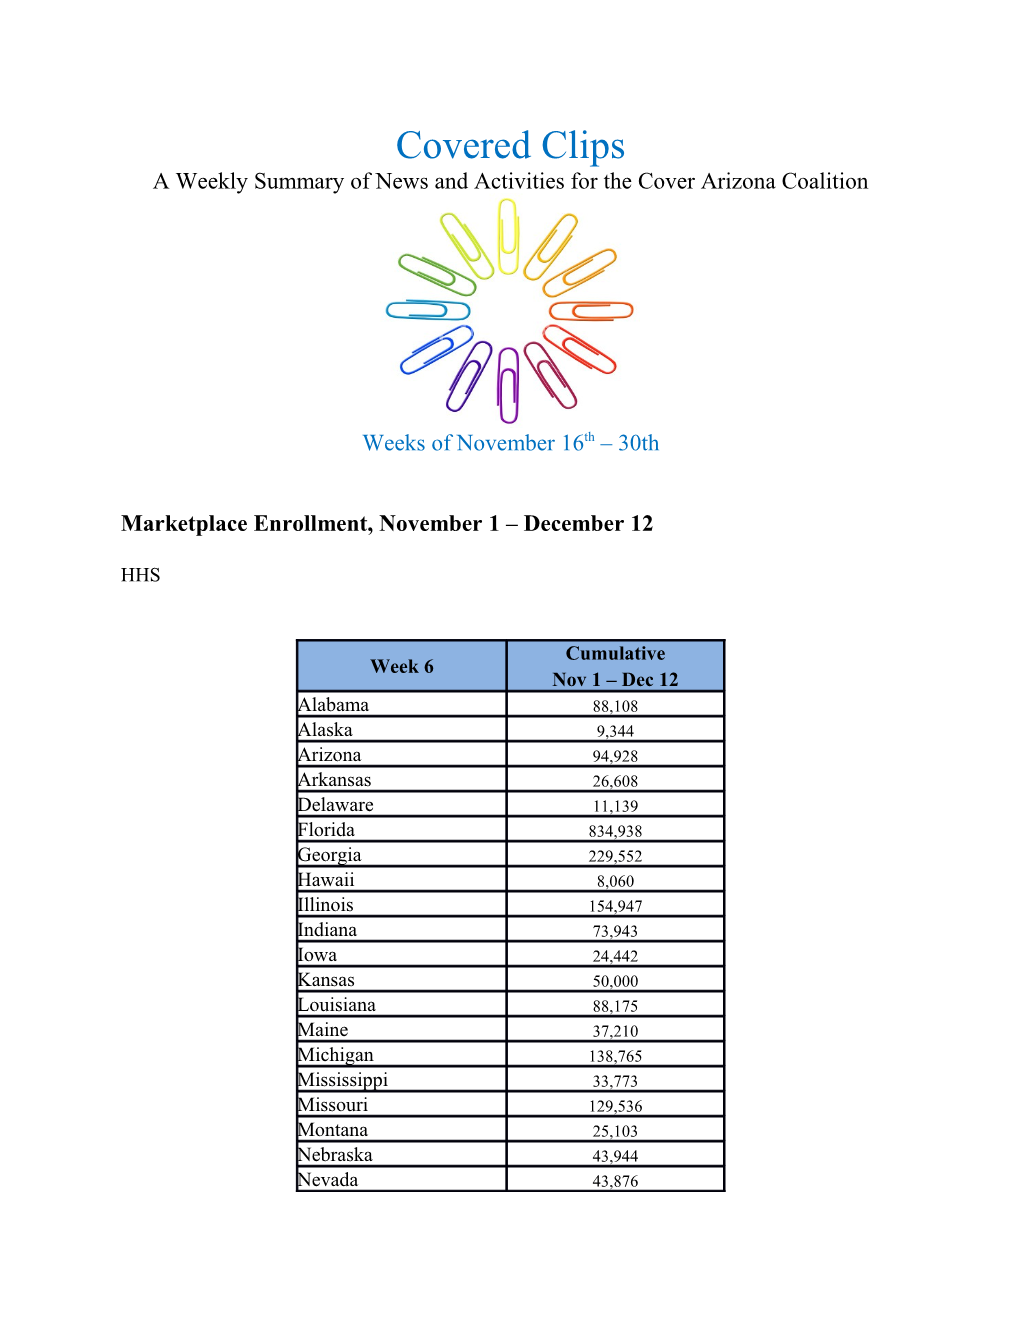 Marketplace Enrollment, November 1 December 12